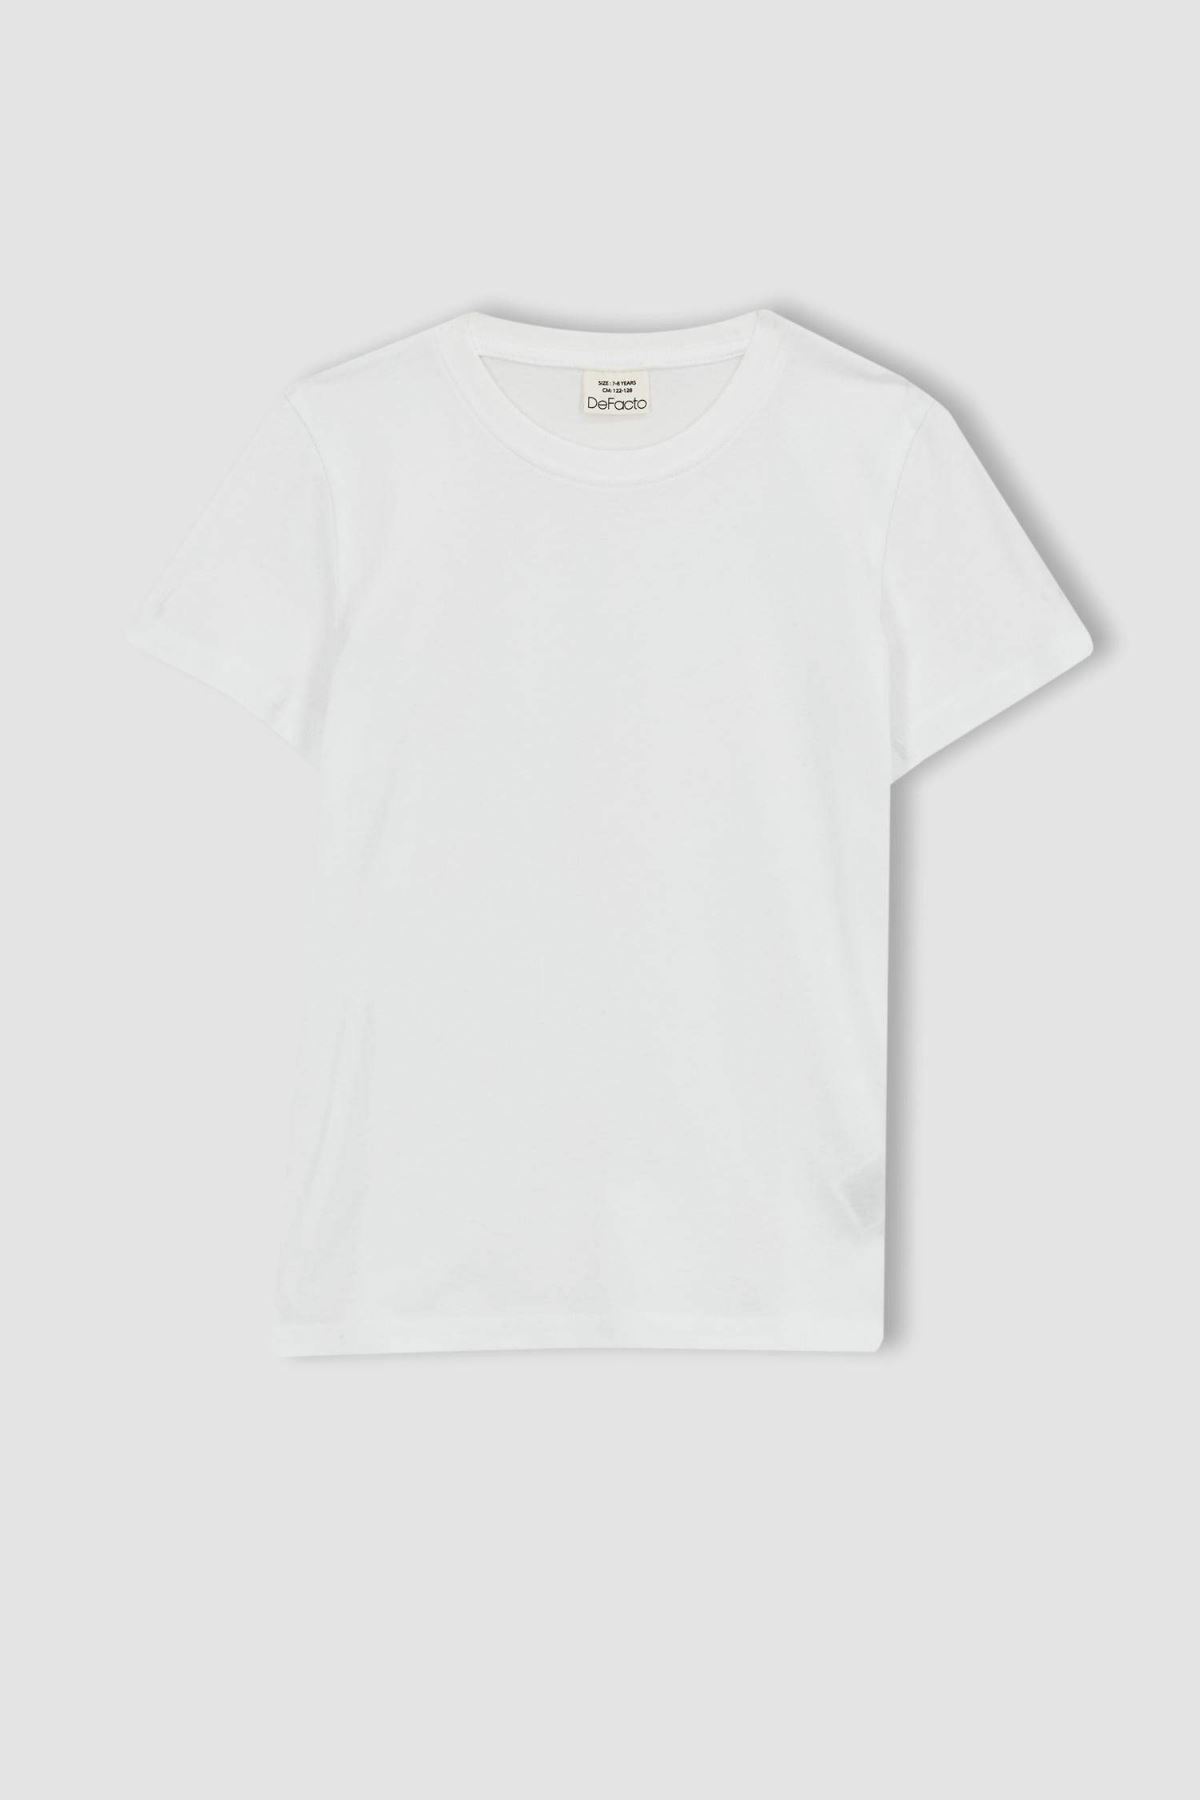 Defacto Erkek Çocuk Beyaz Tişört - K1687A6/WT34